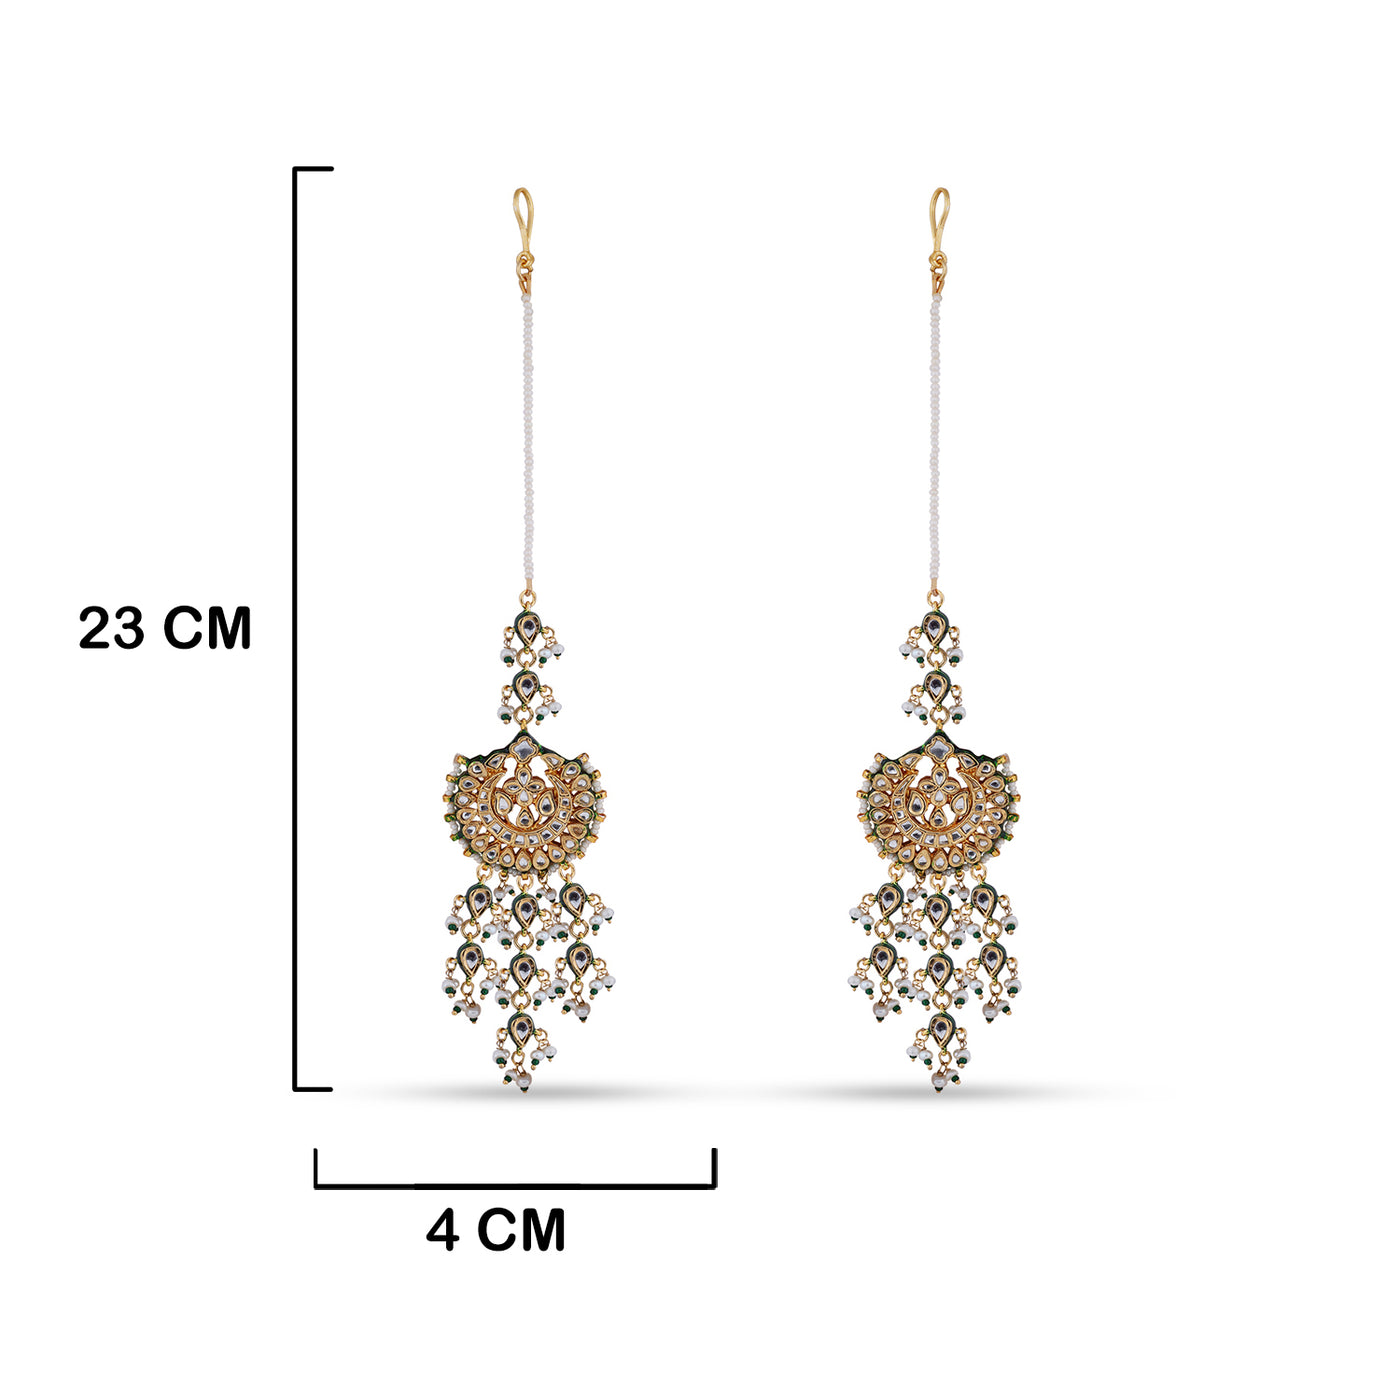 Meenakari Kundan Long Earrings with measurements in cm. 23cm by 4cm.